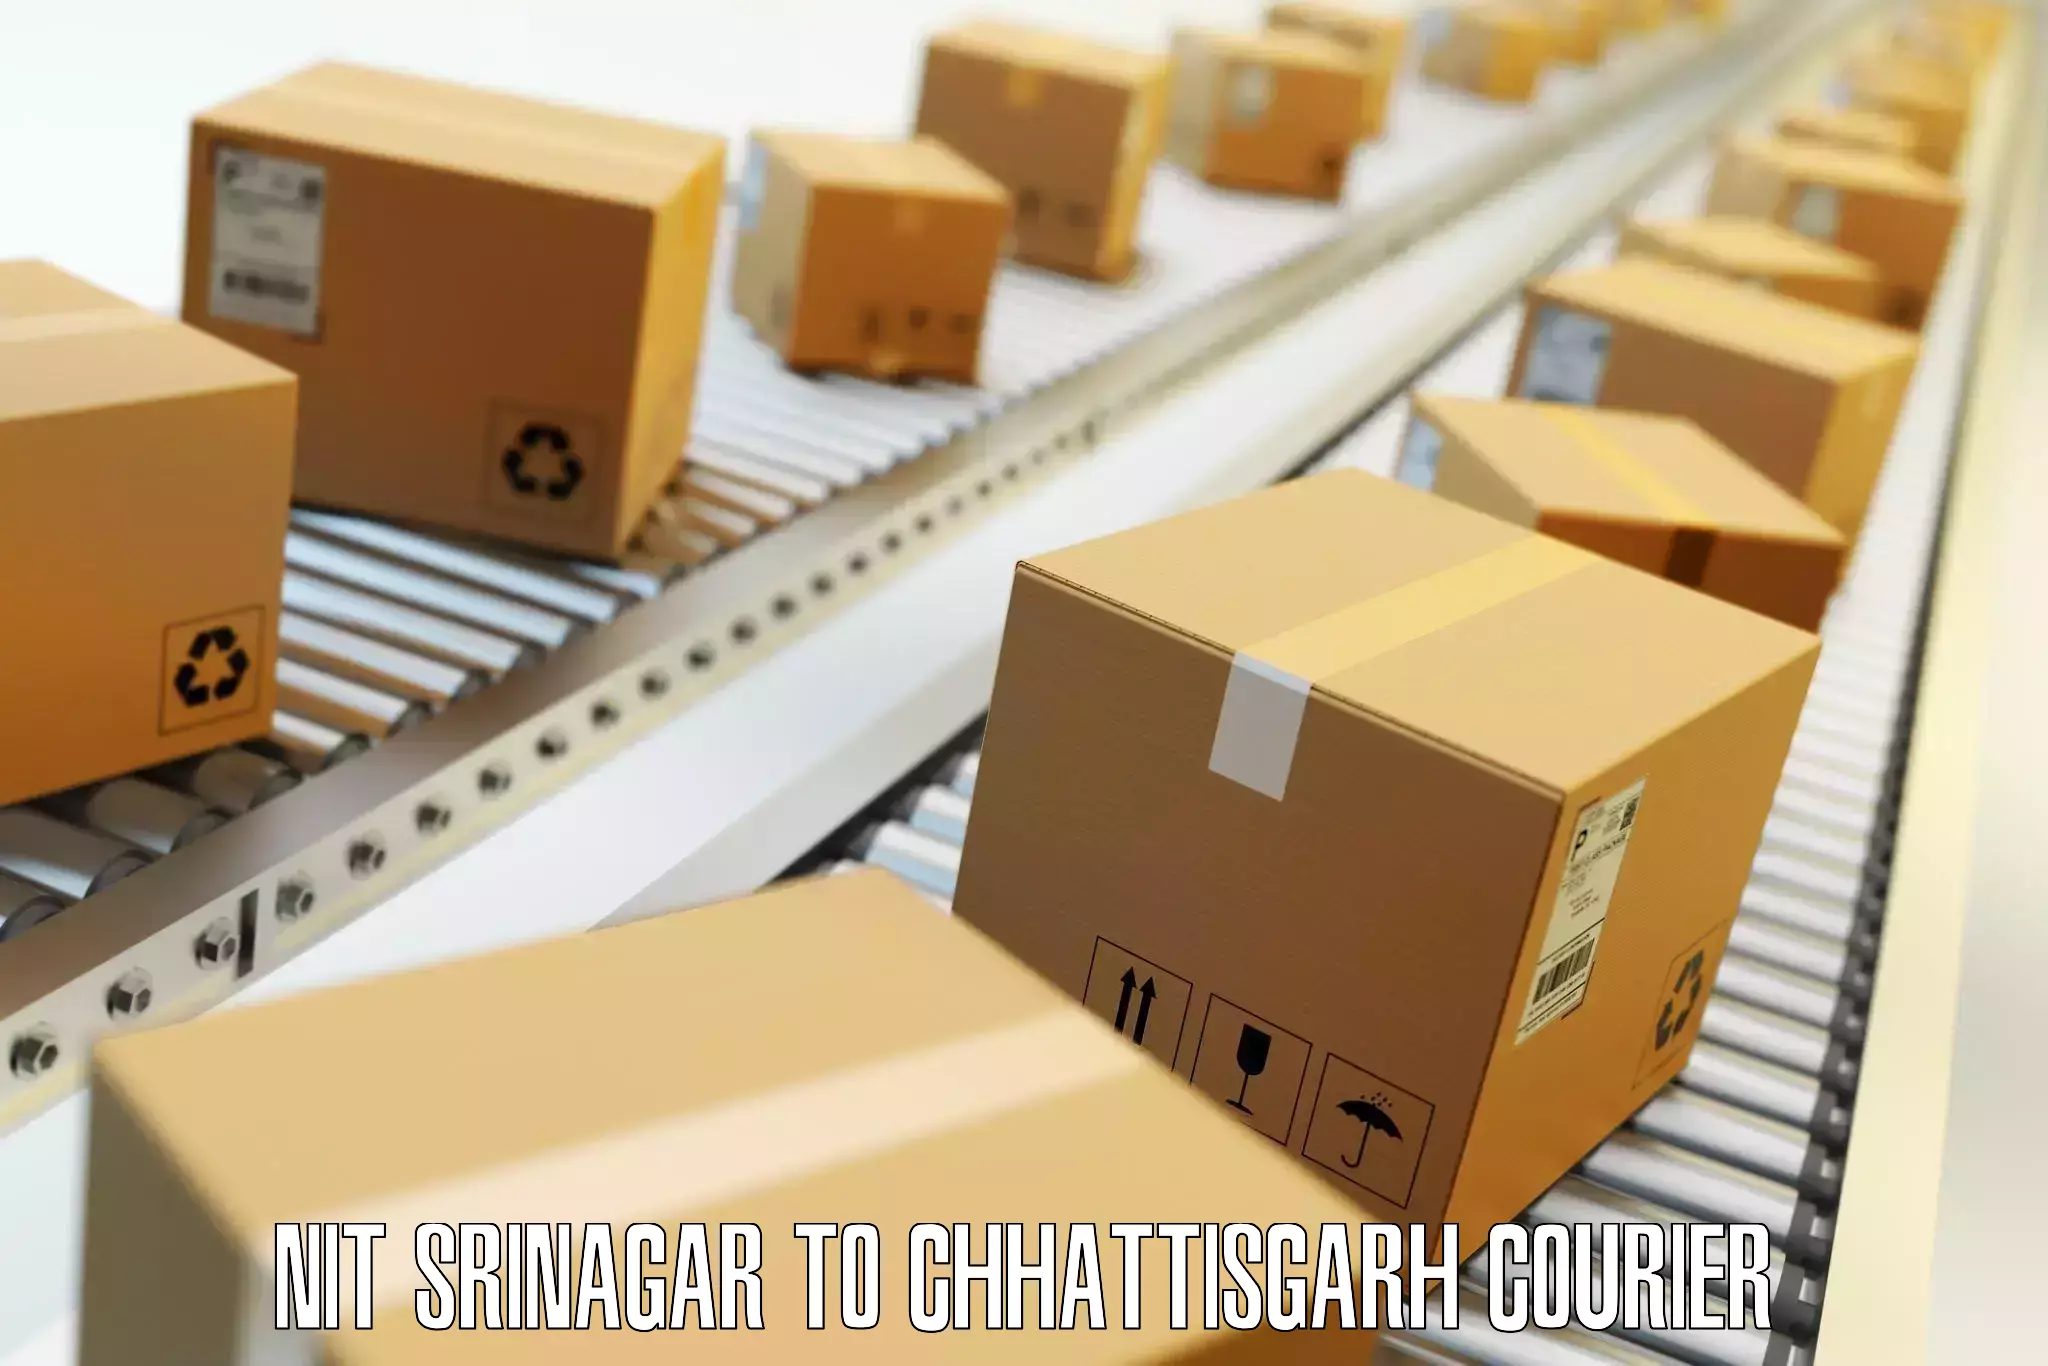 Baggage delivery estimate NIT Srinagar to Chhattisgarh